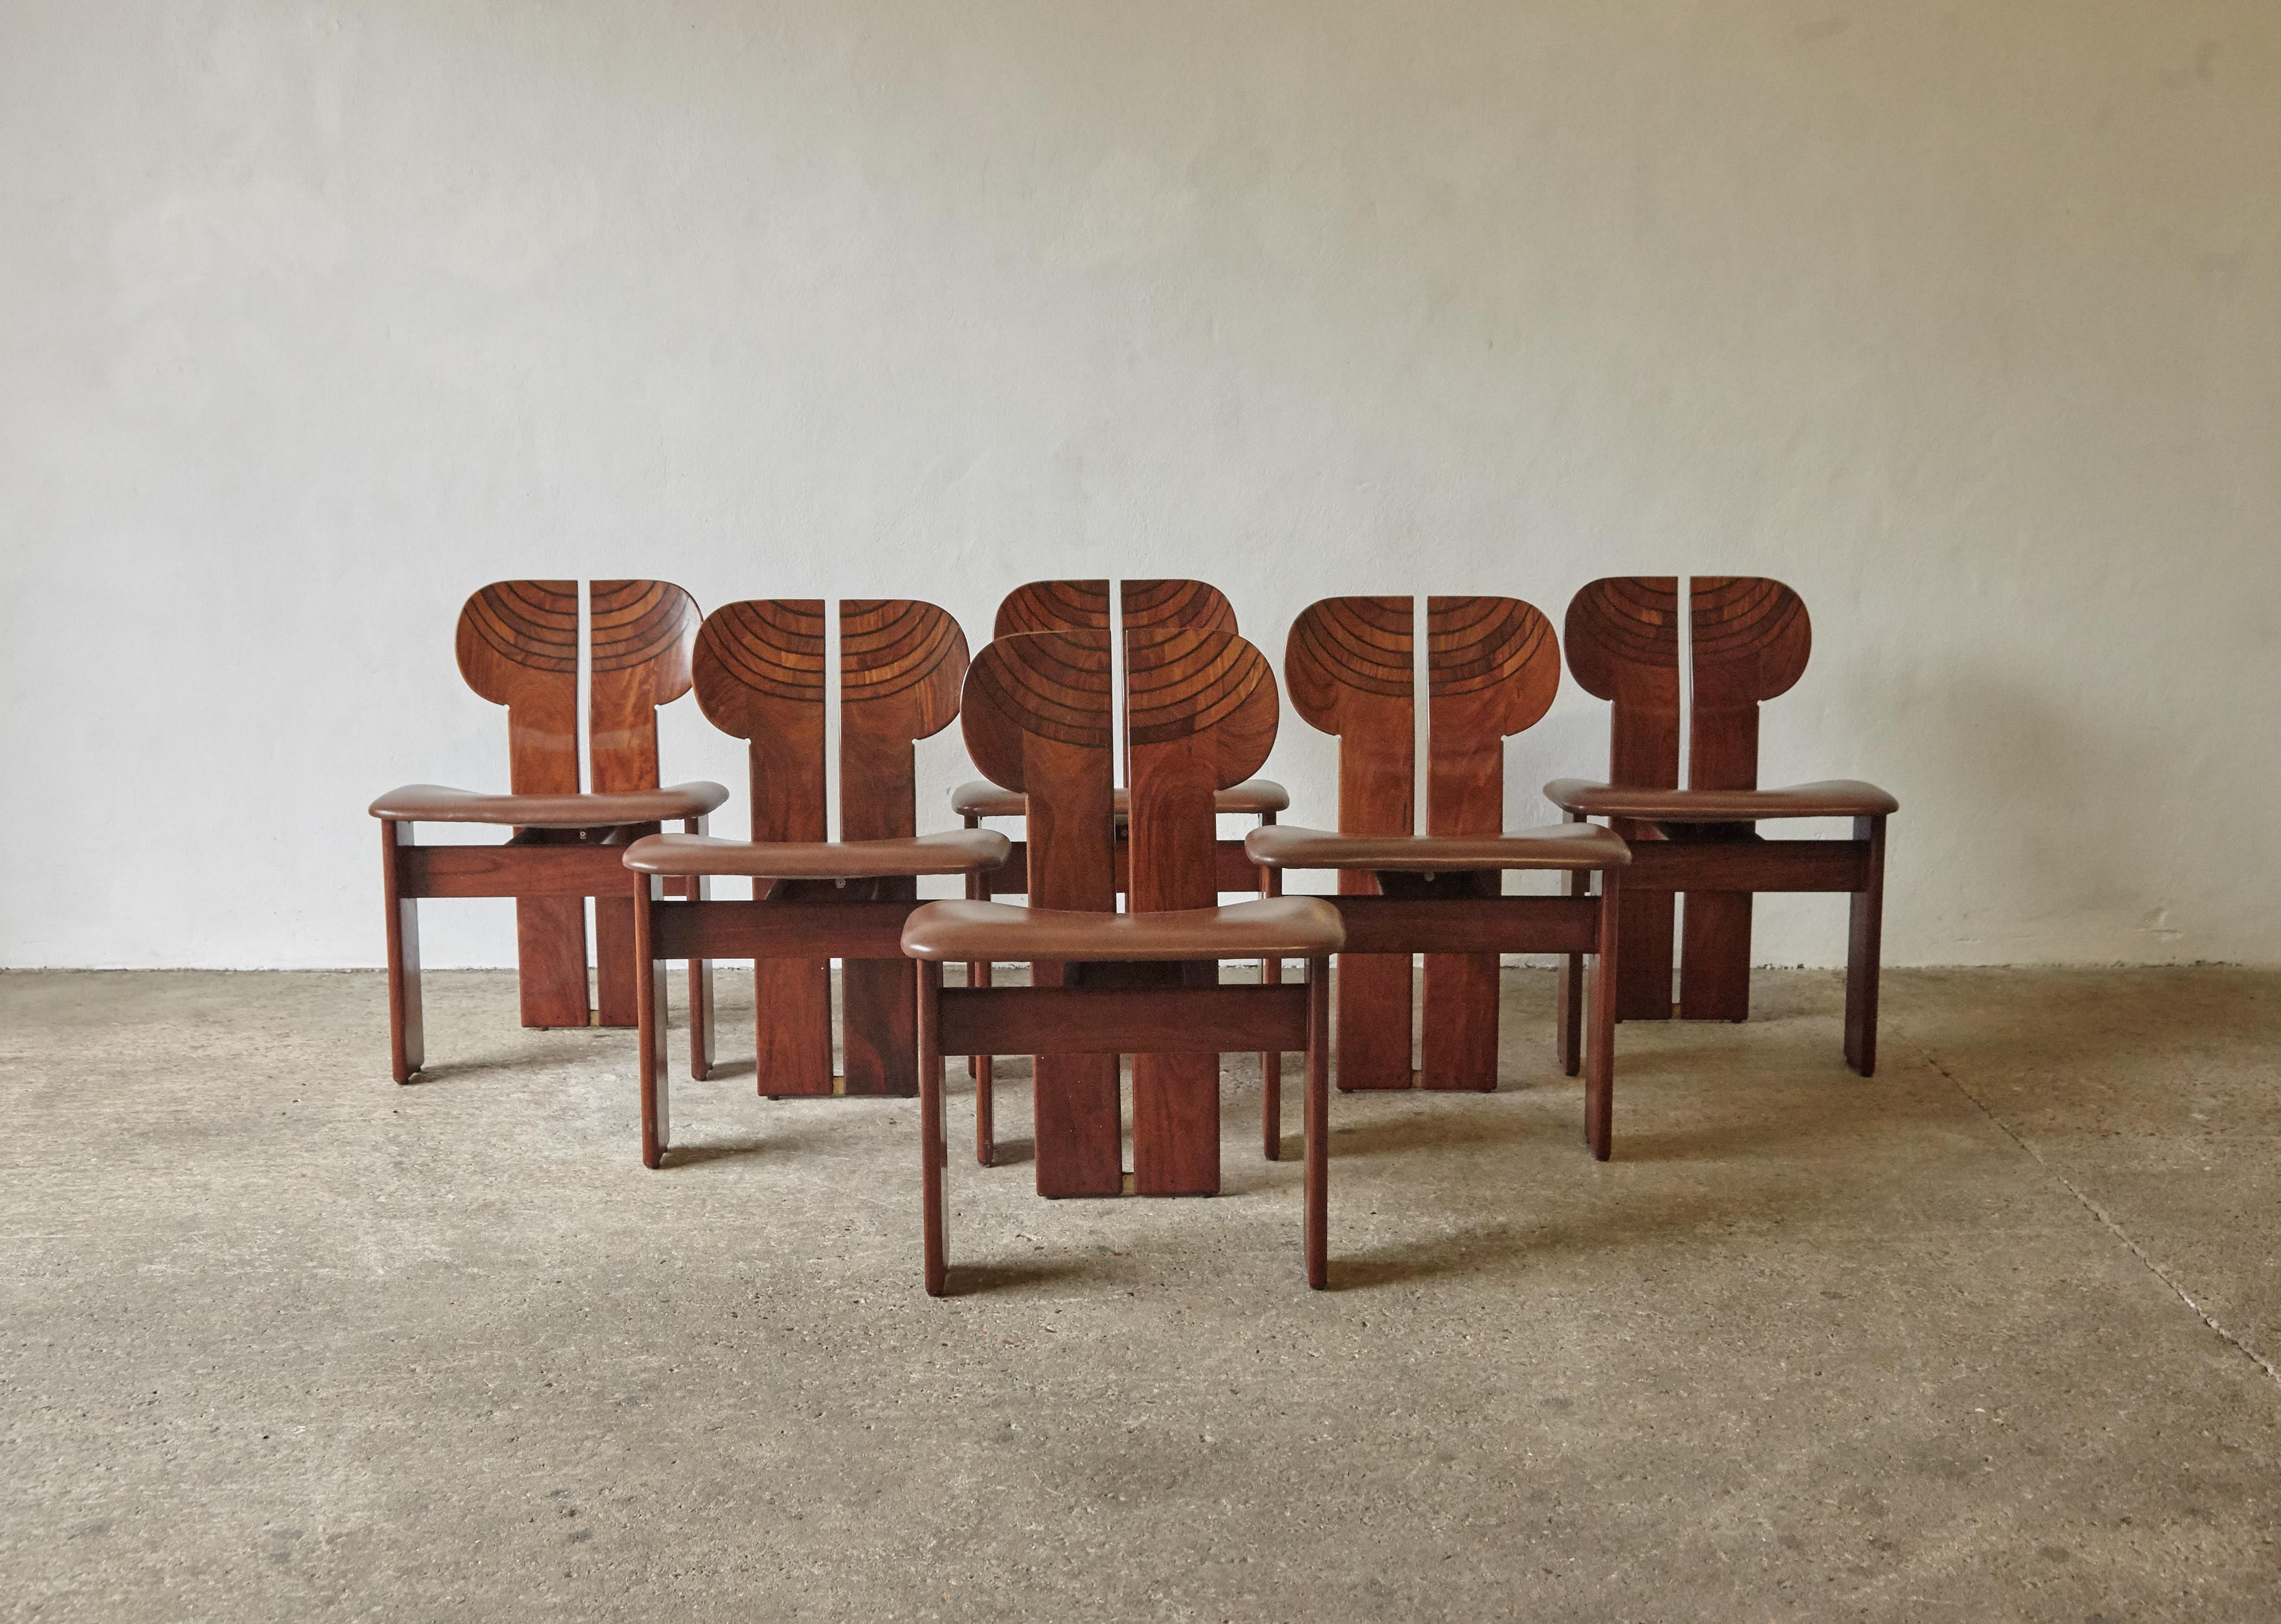 Un ensemble rare de six superbes chaises Africa conçues par Afra & Tobia Scarpa dans les années 1970, et produites par Maxalto, Italie. Il s'agit de très beaux exemples en bois exotique rare, en ronce, en cuir noir et en laiton. Très bon état